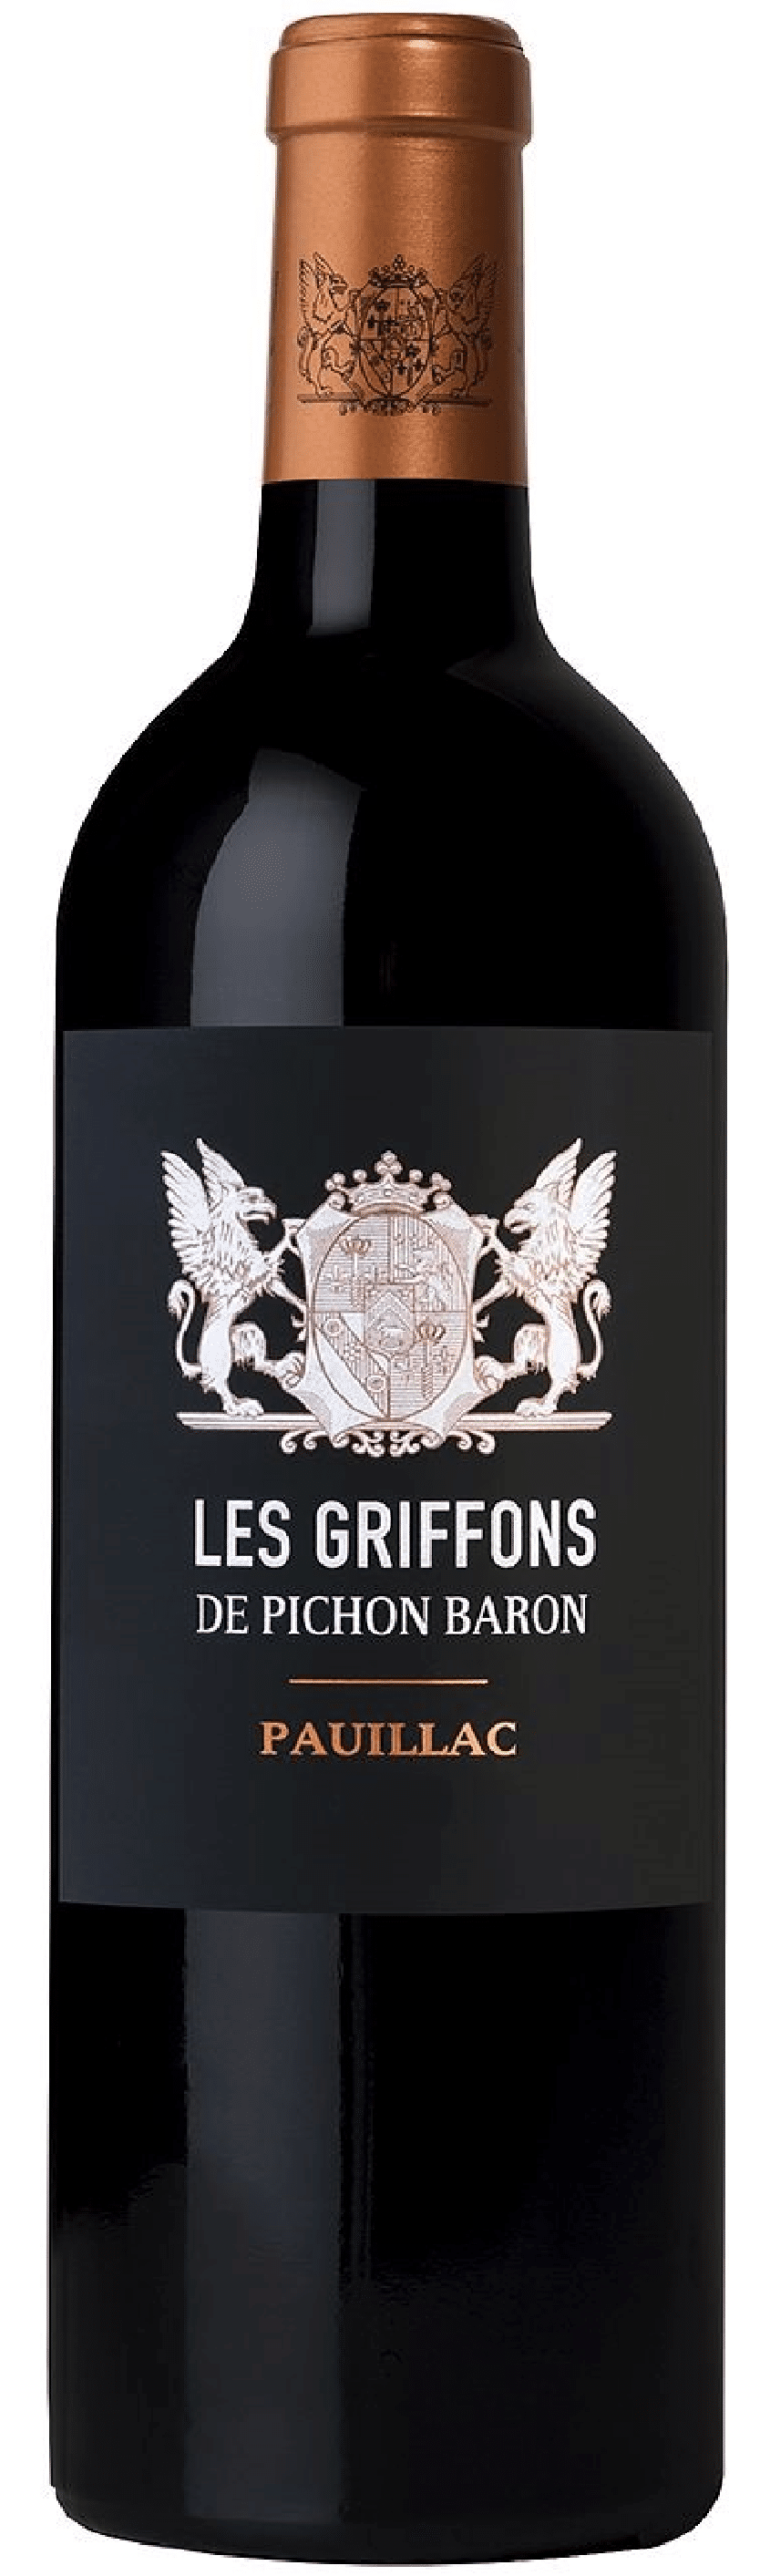 2019 Les Griffons de Pichon Baron Pauillac